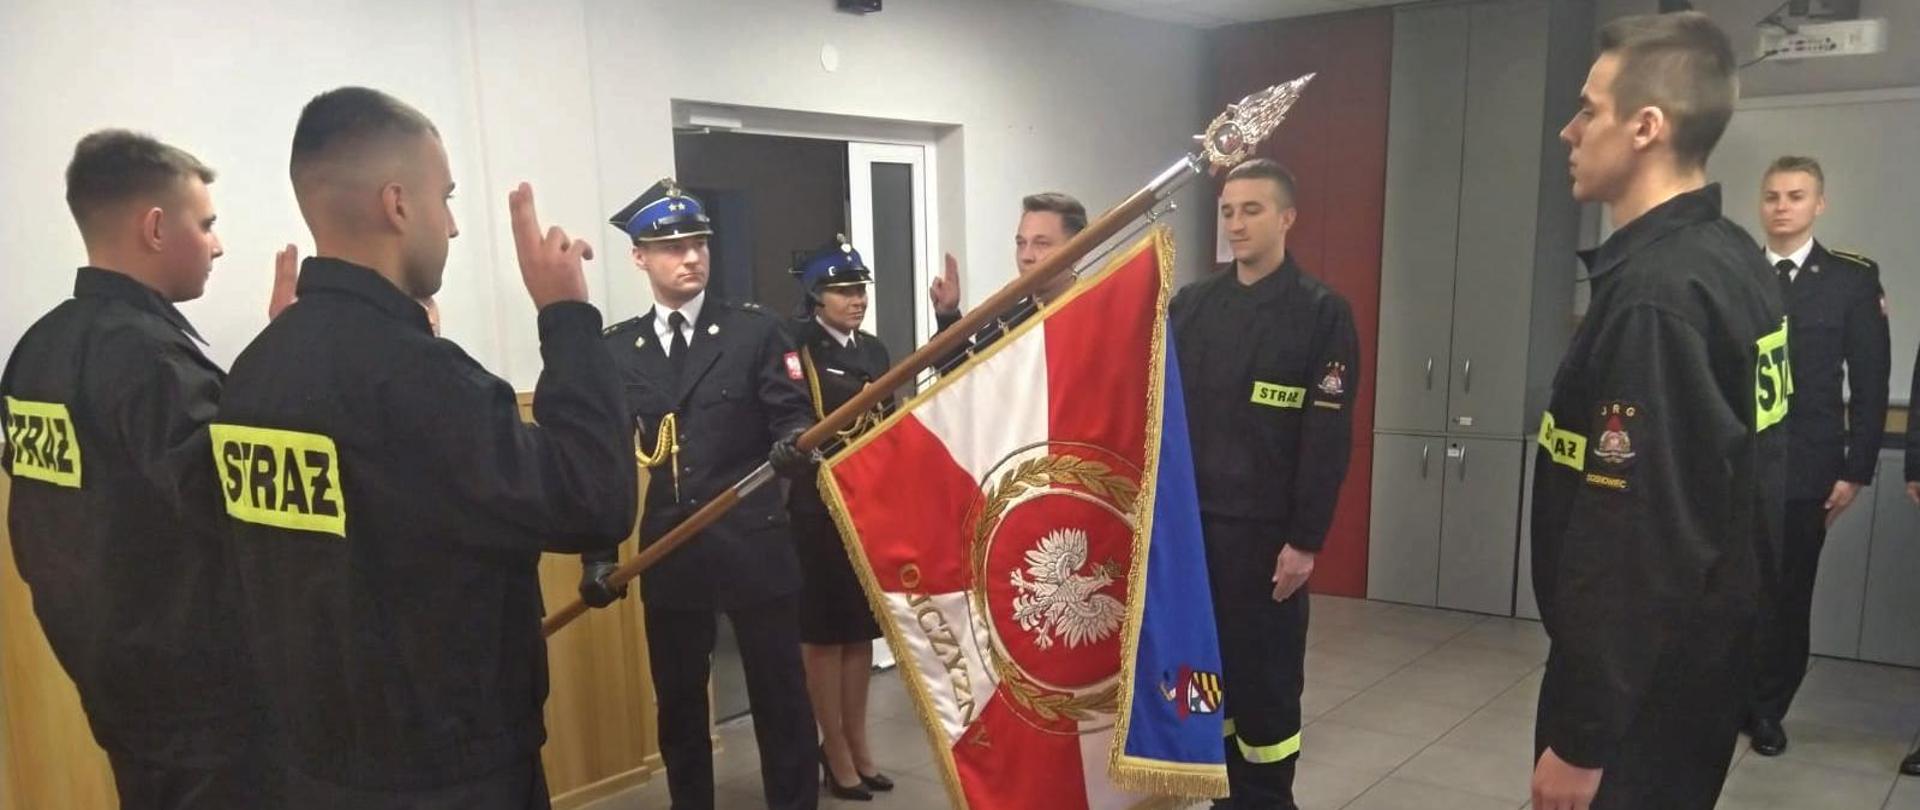 Na zdjęciu Poczet Sztandarowy Komendy Miejskiej Państwowej Straży Pożarnej w Sosnowcu oraz strażacy składający rotę ślubowania